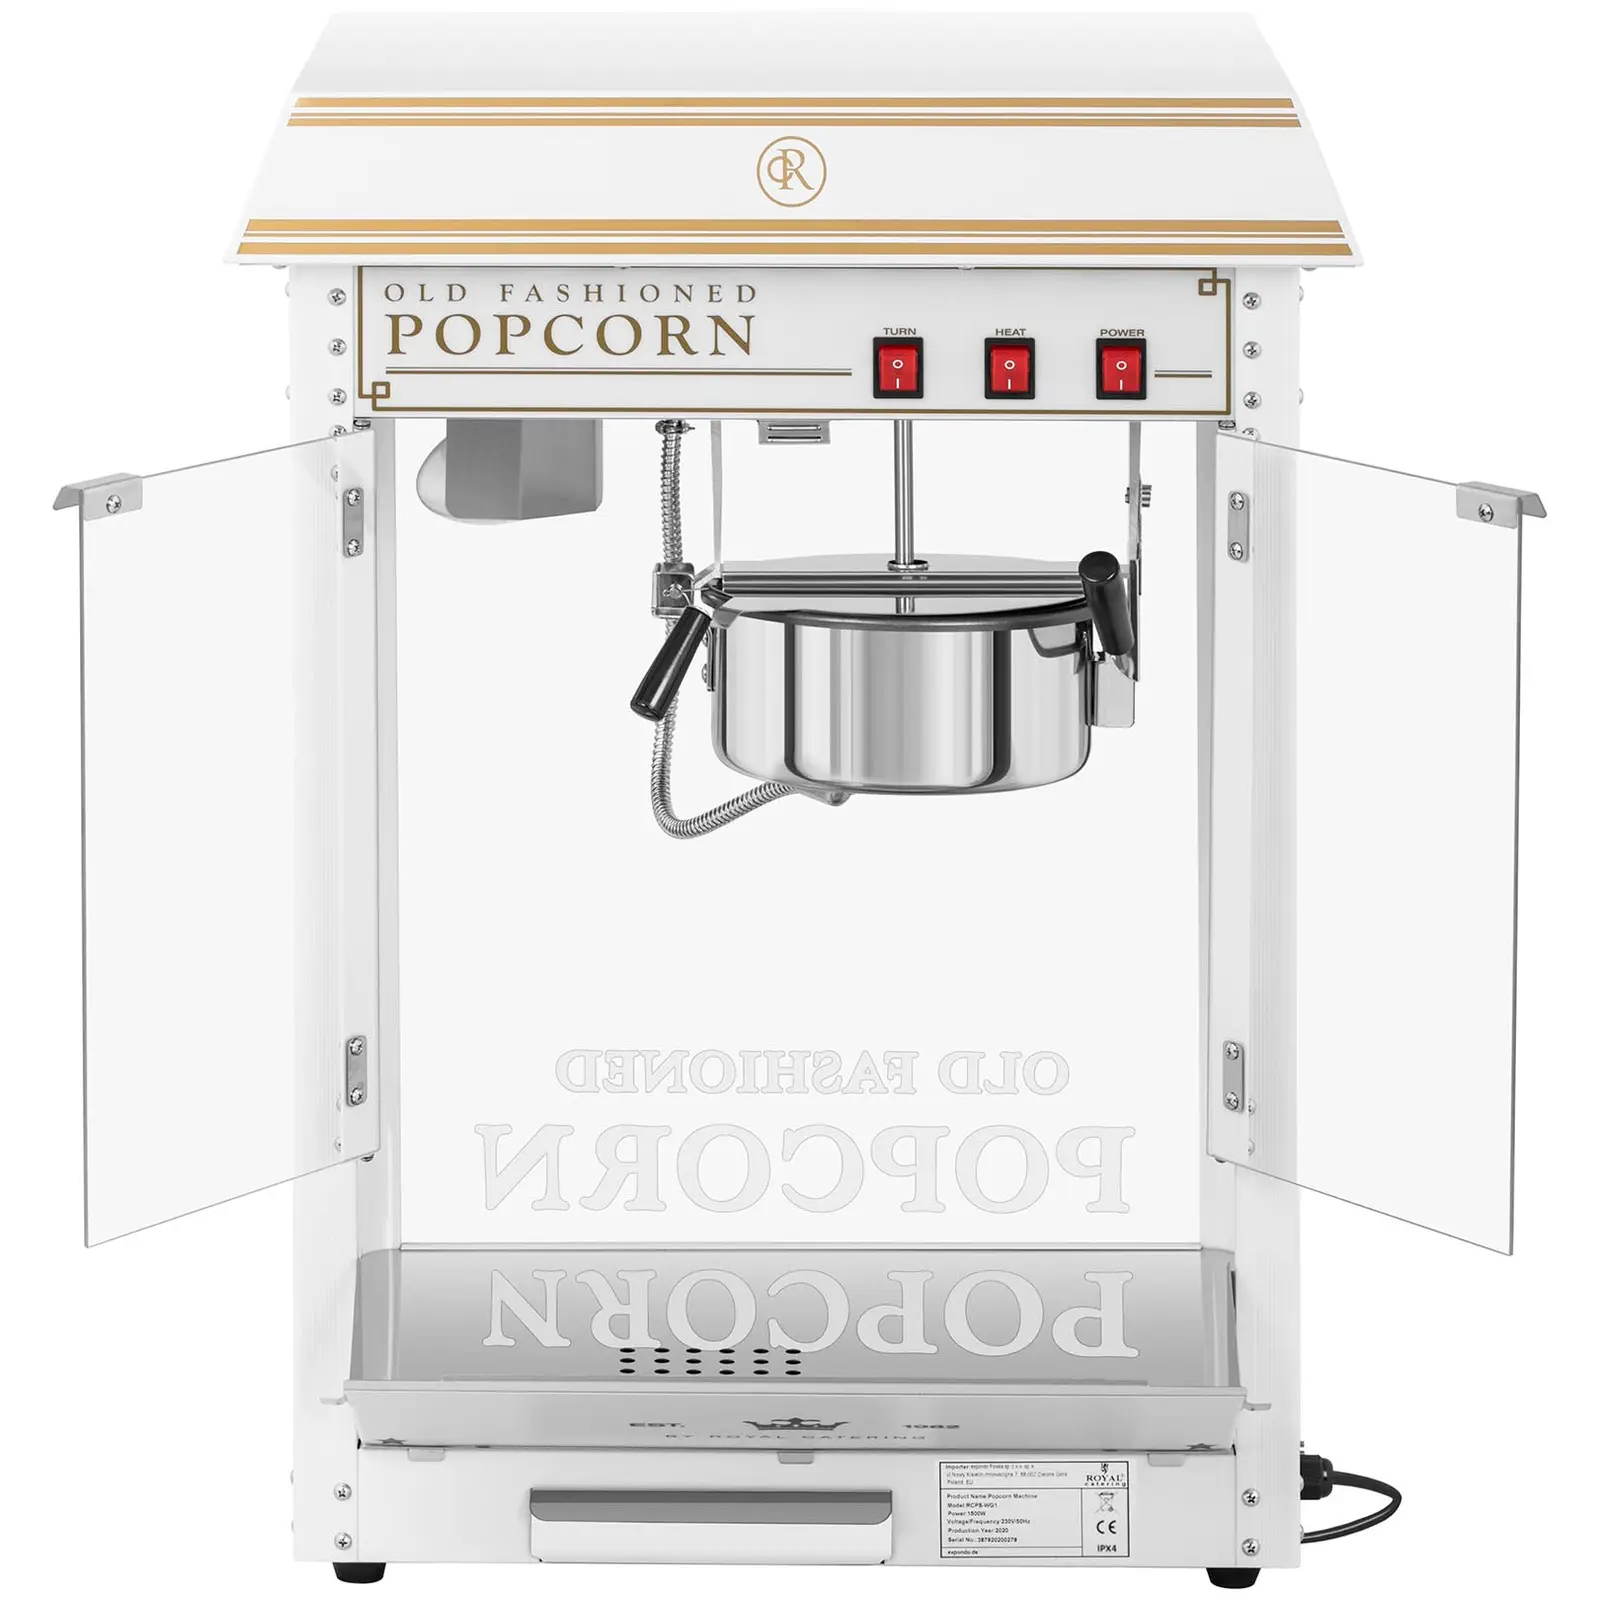 Popcorn-kone - valko-kultainen